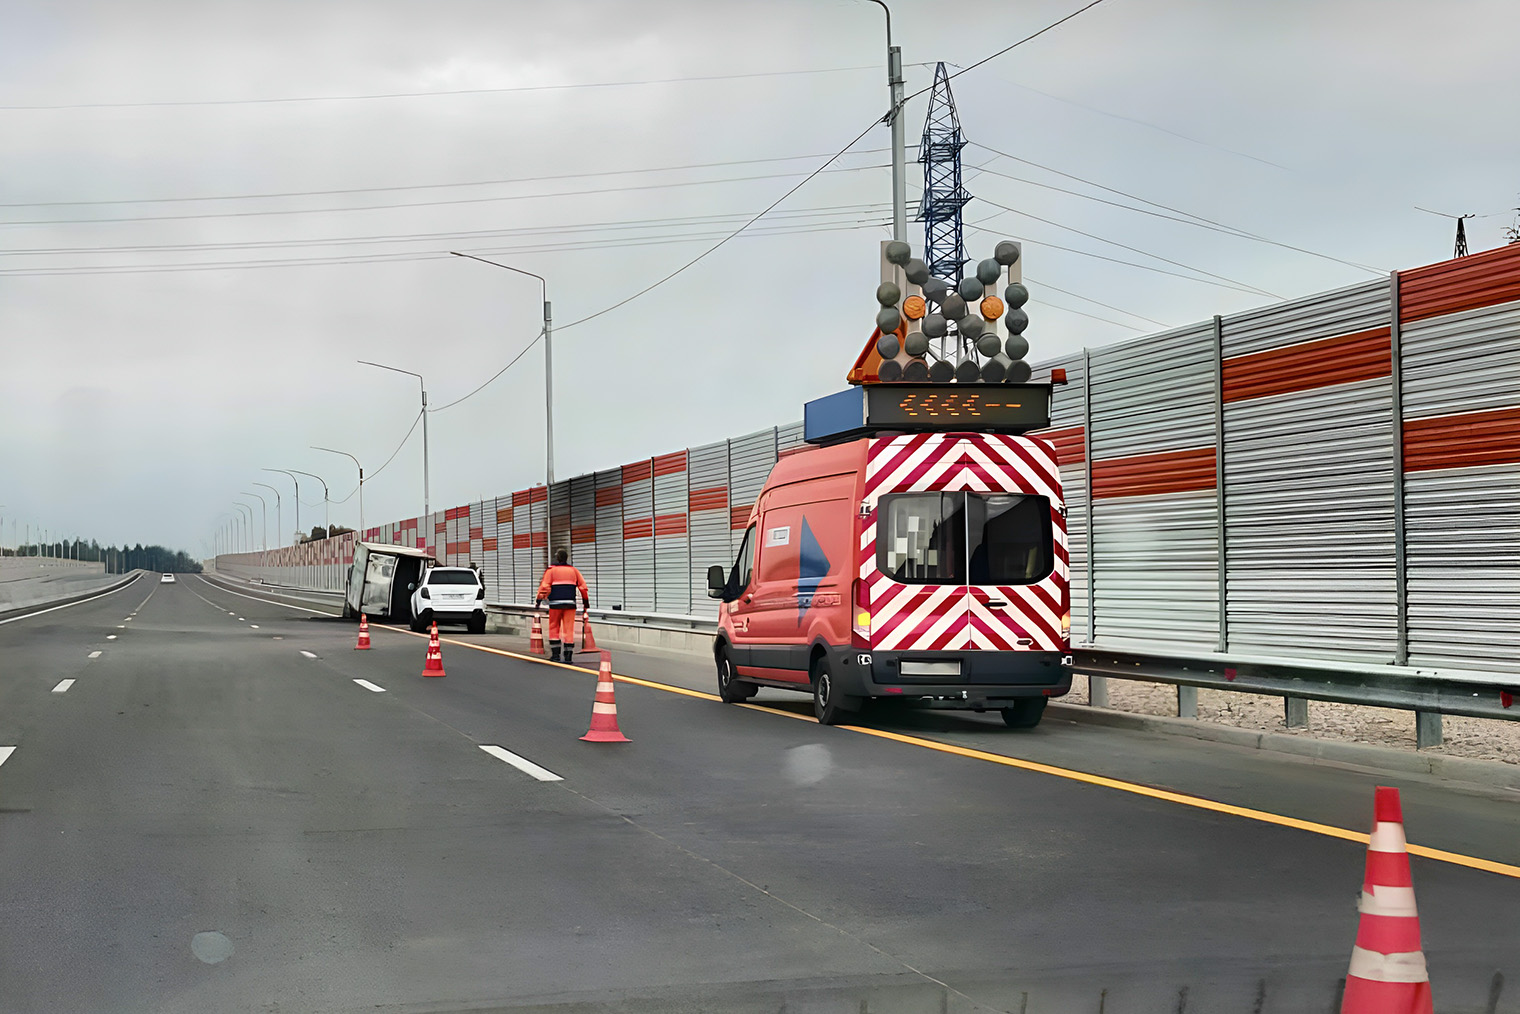 Если на дороге произошло ДТП или появилось препятствие, аварийные комиссары выставляют конусы, чтобы оградить место происшествия и предупредить водителей. Источник: «Яндекс Карты»